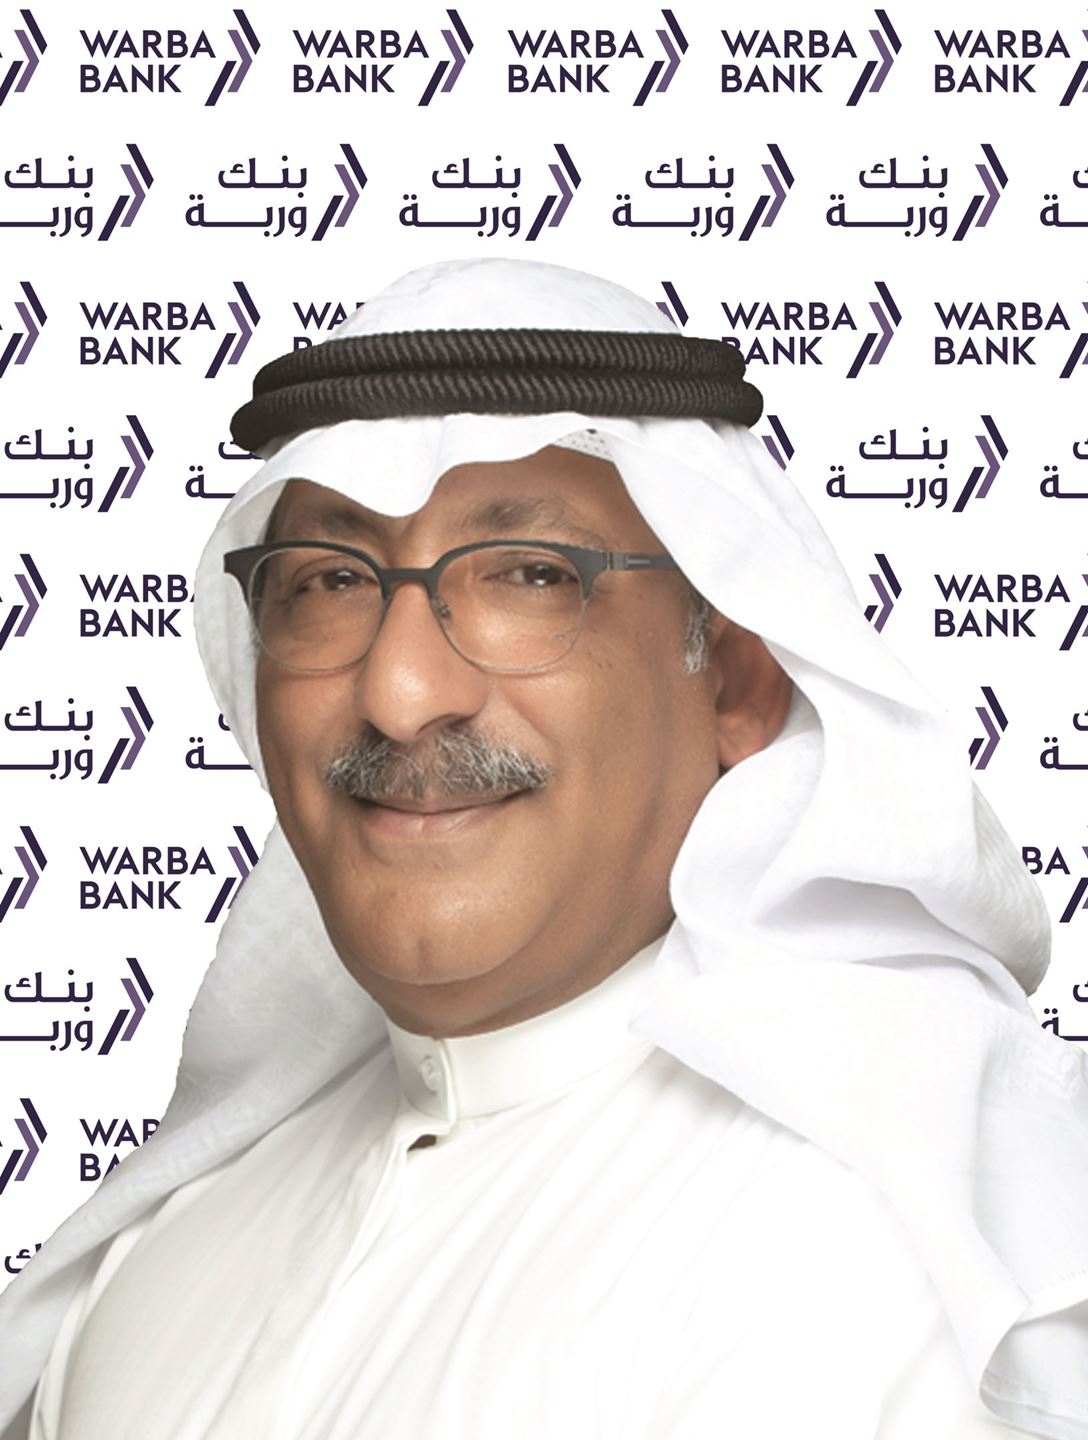 السيد هيثم عبدالعزيز التركيت - رئيس مجموعة تكنولوجيا المعلومات في بنك وربة 